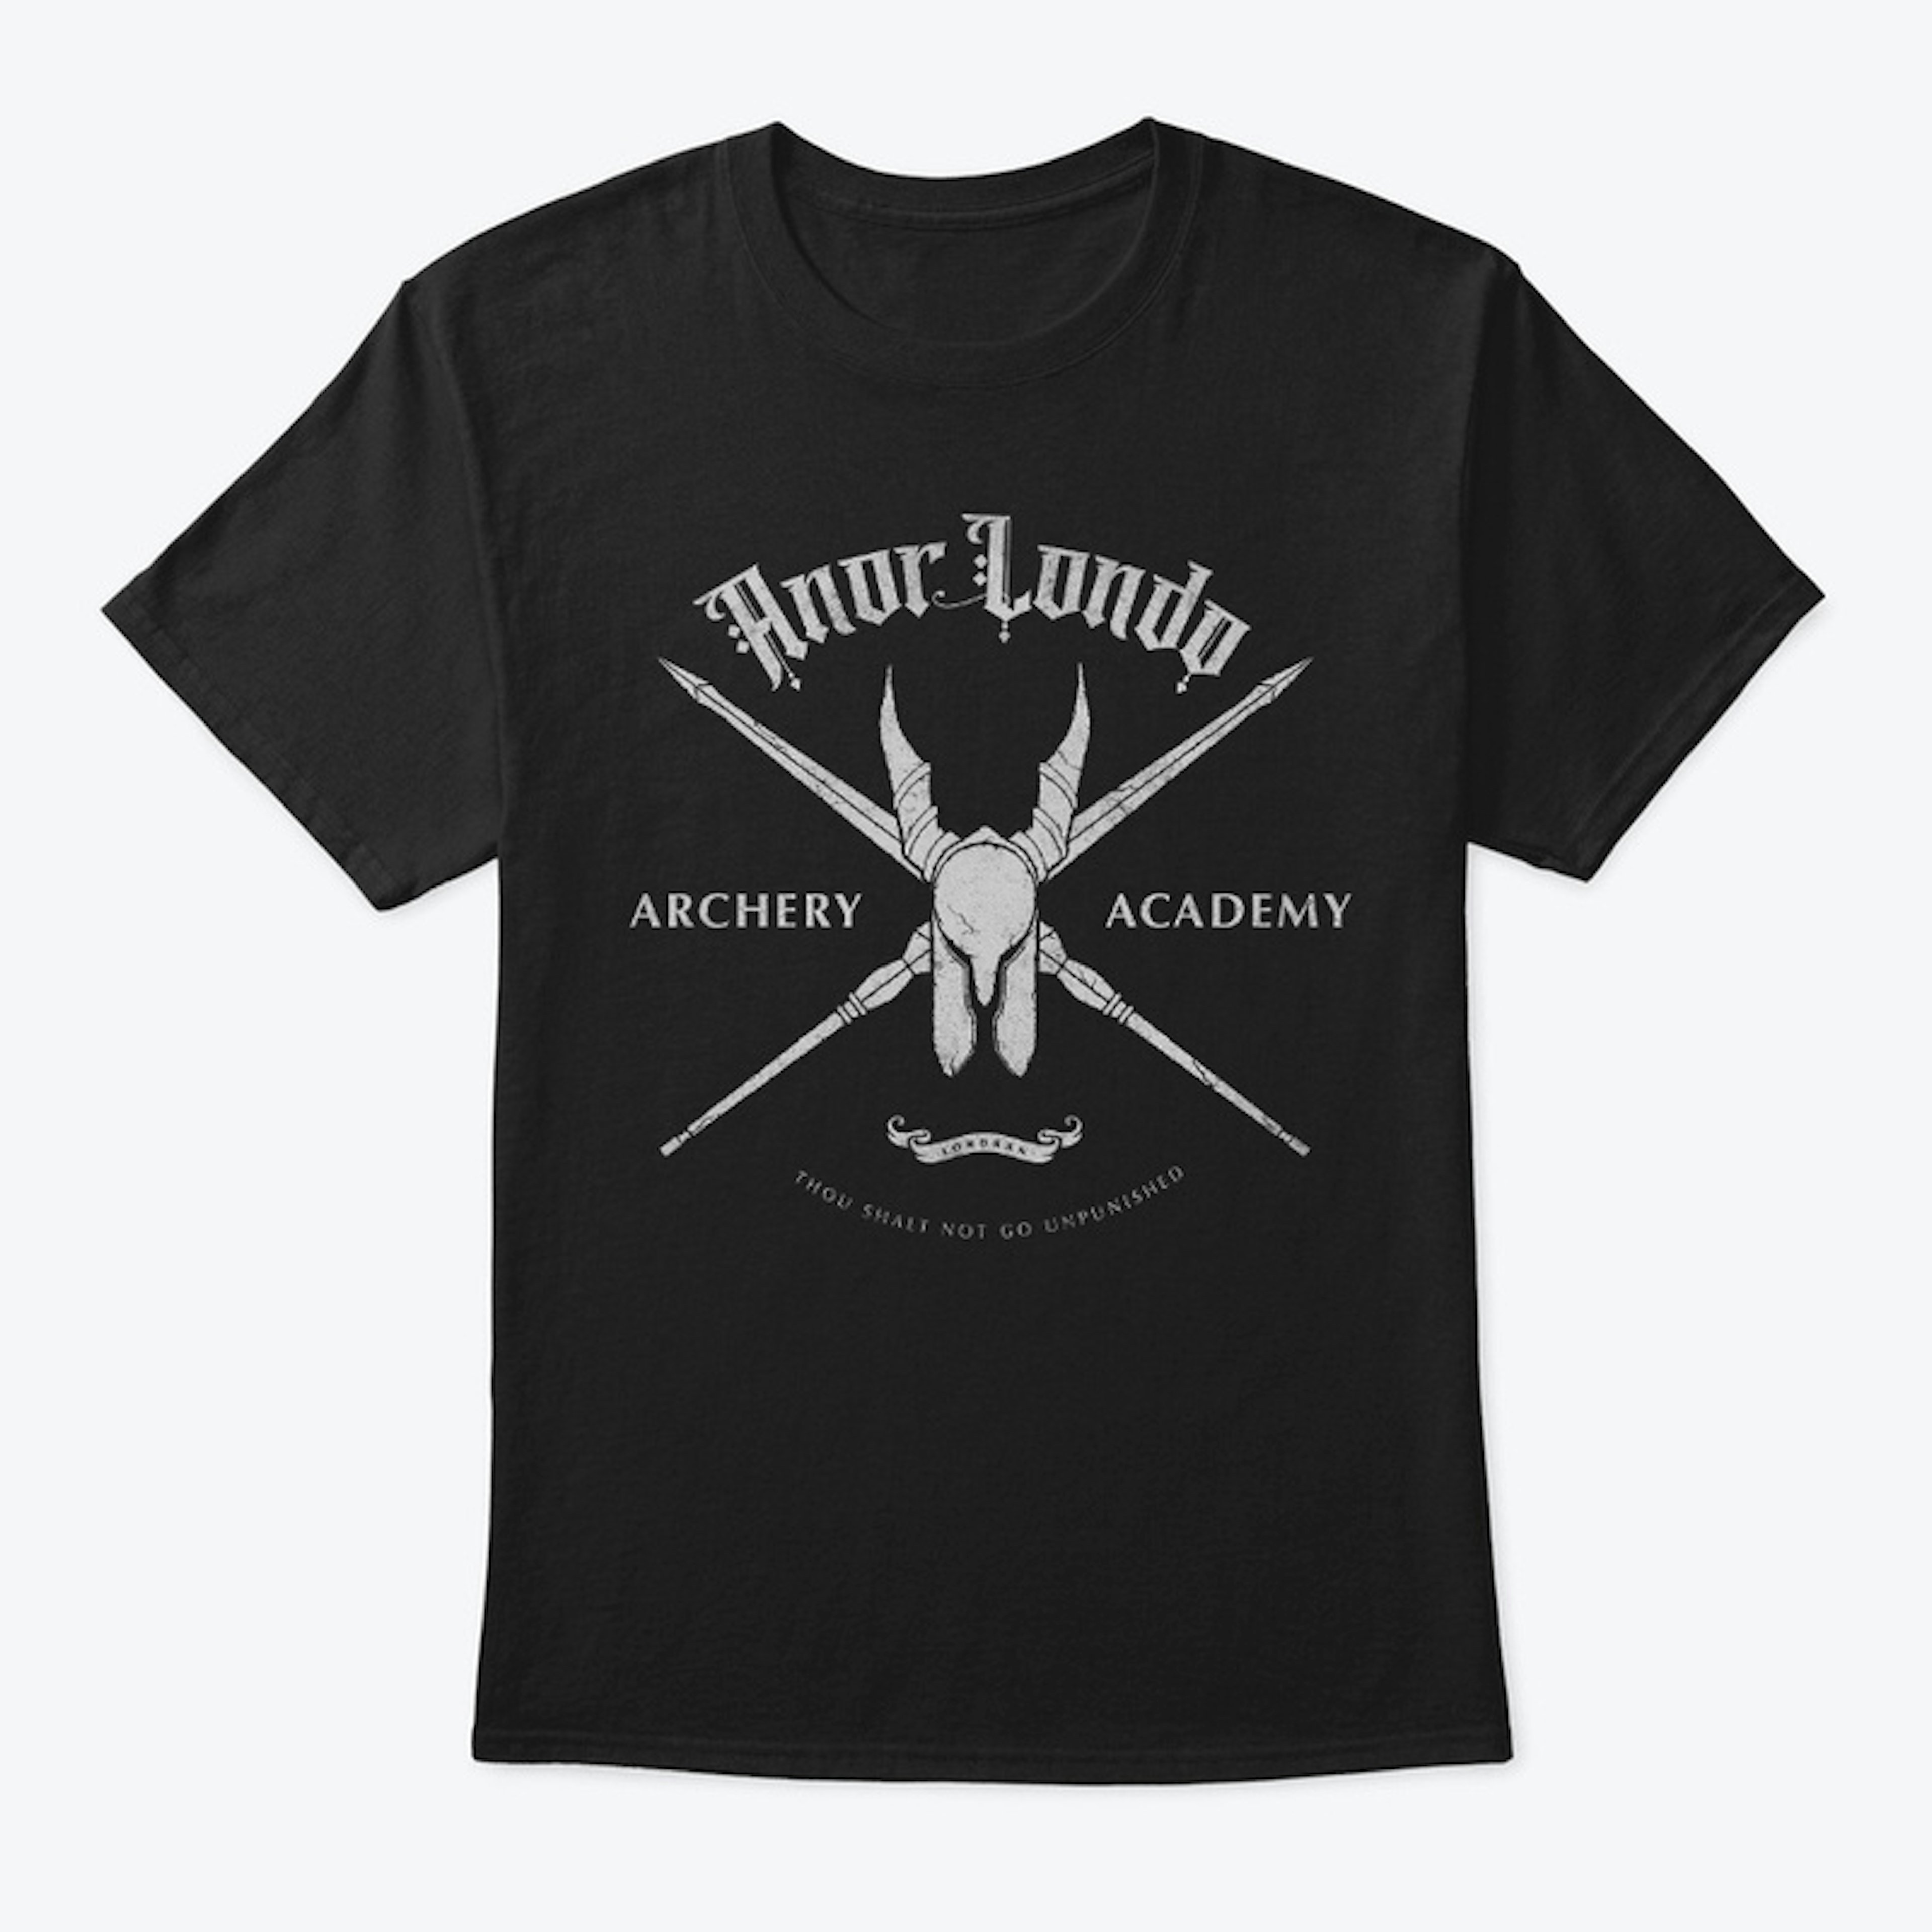 Anor Londo Archery Academy